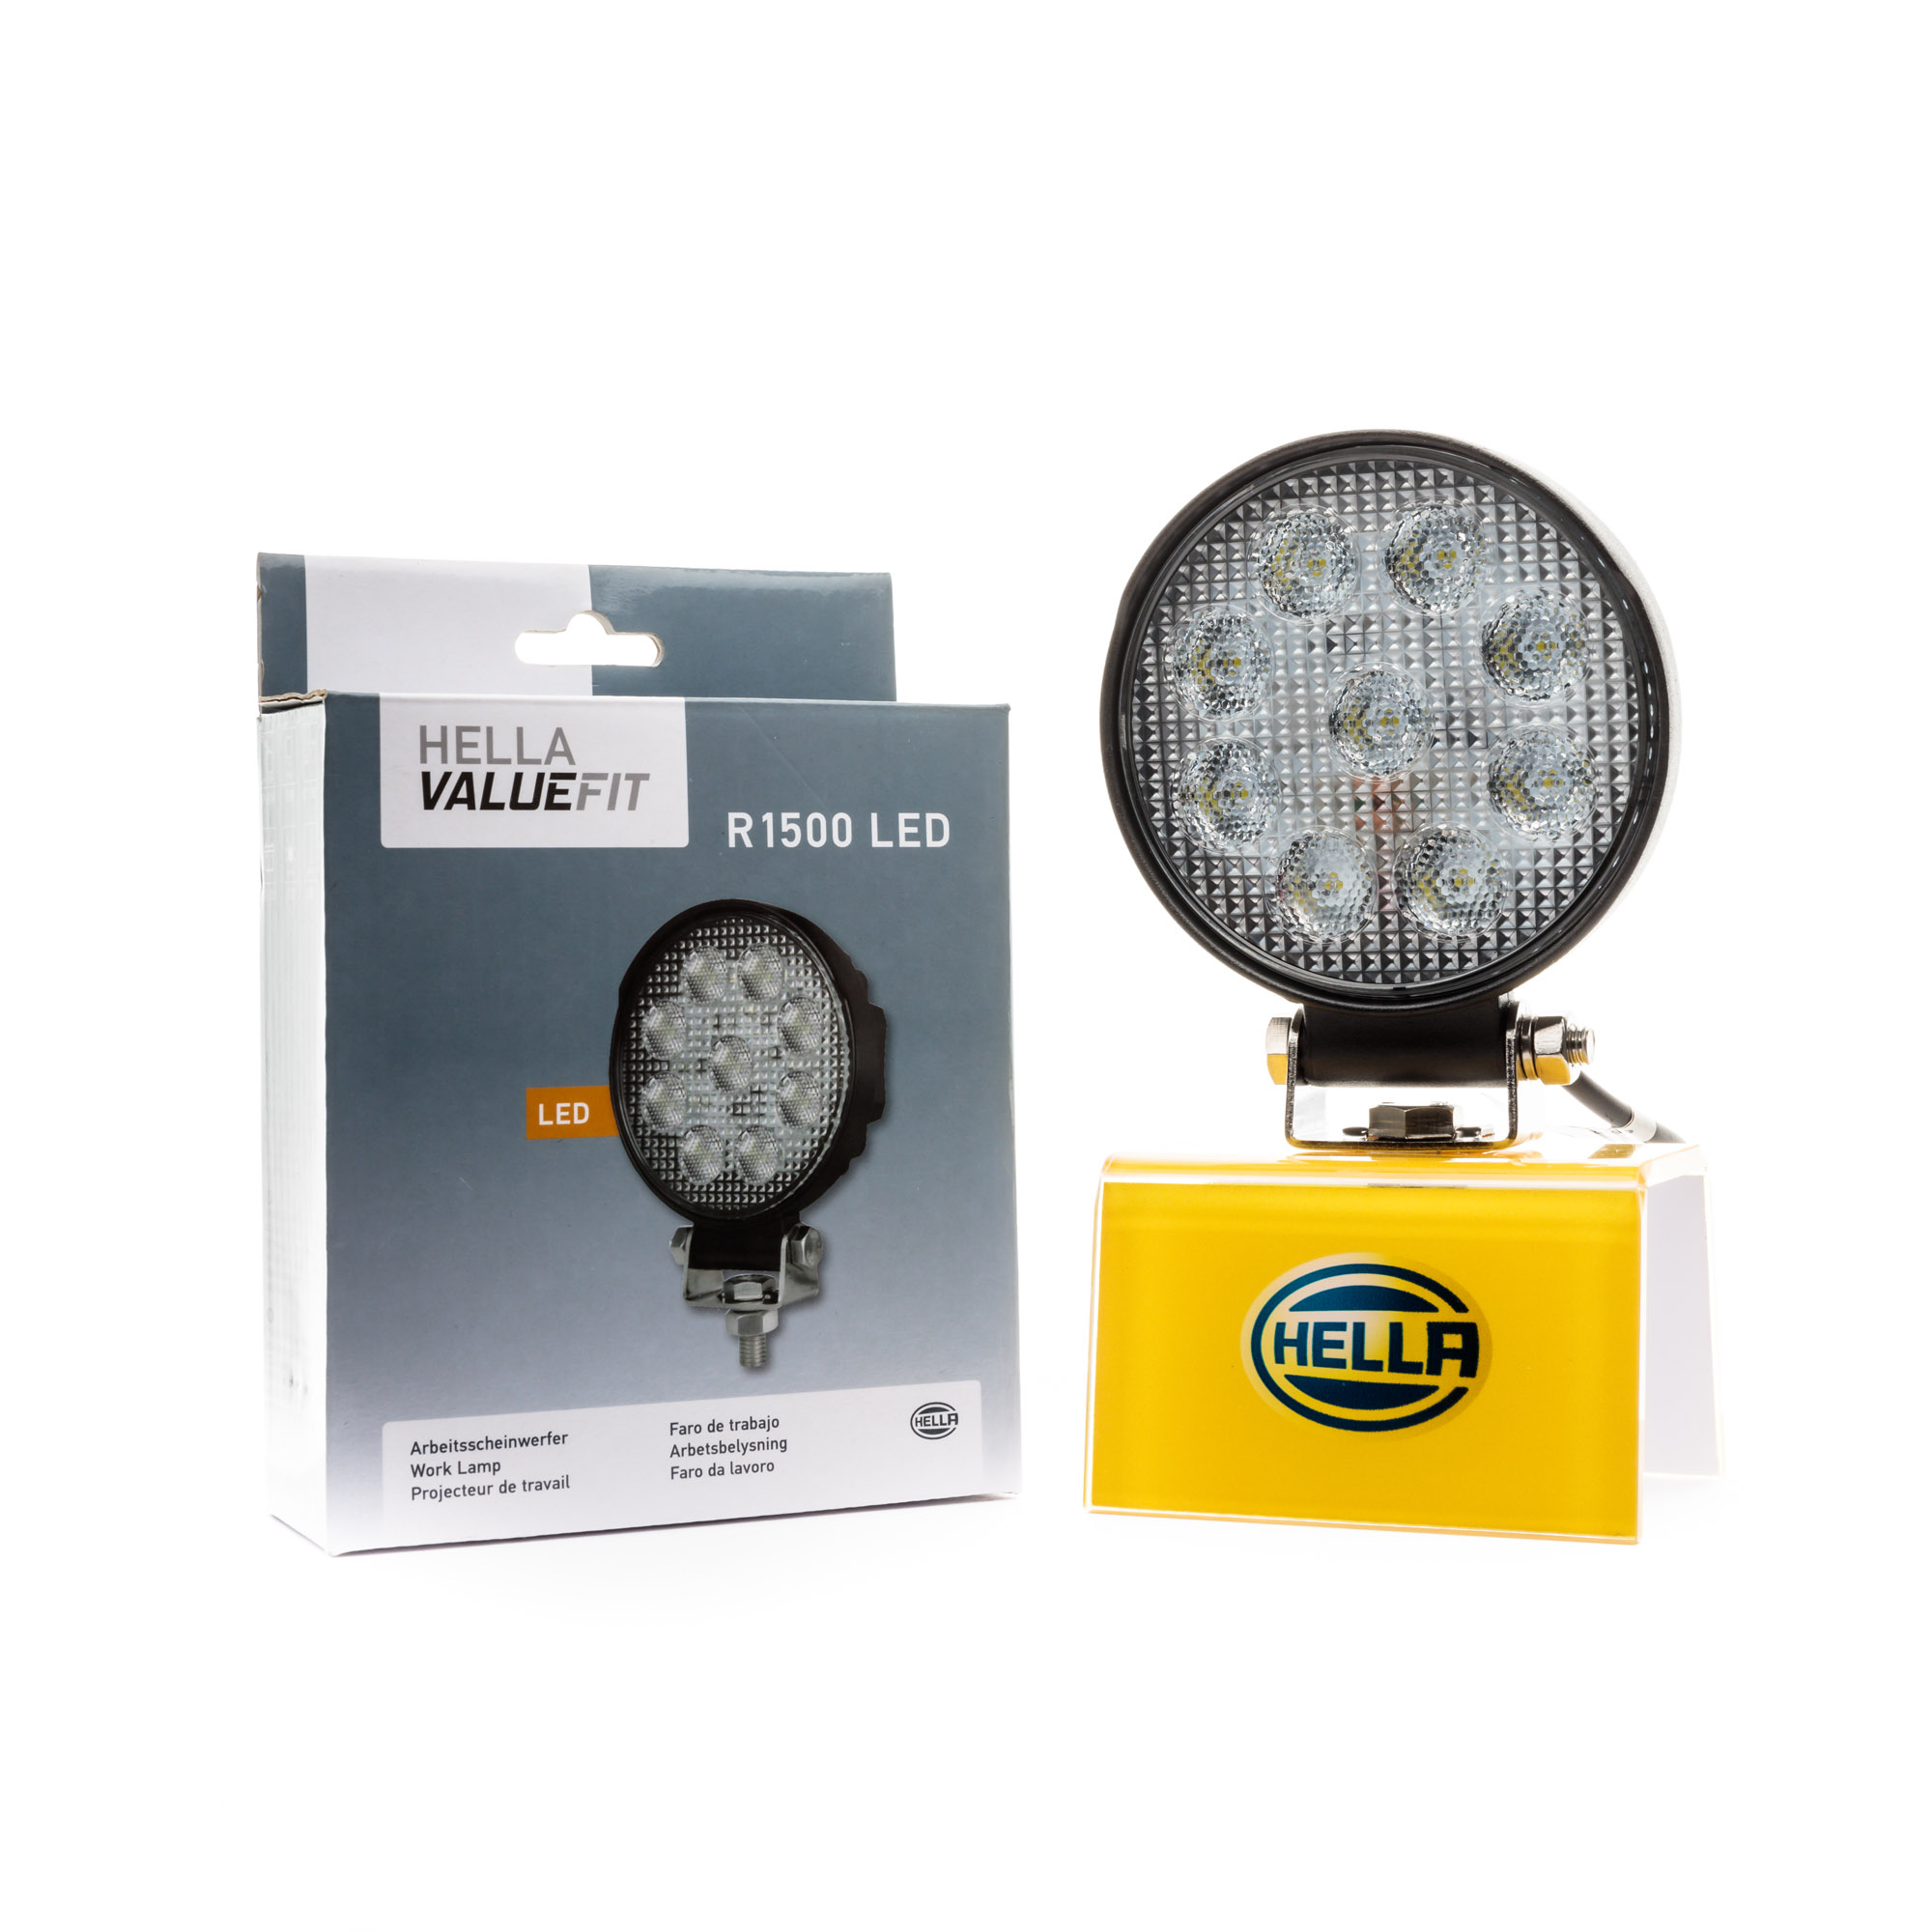 HELLA Valuefit R1500 LED Work Light - 1G0 357 101 012 - auto2u